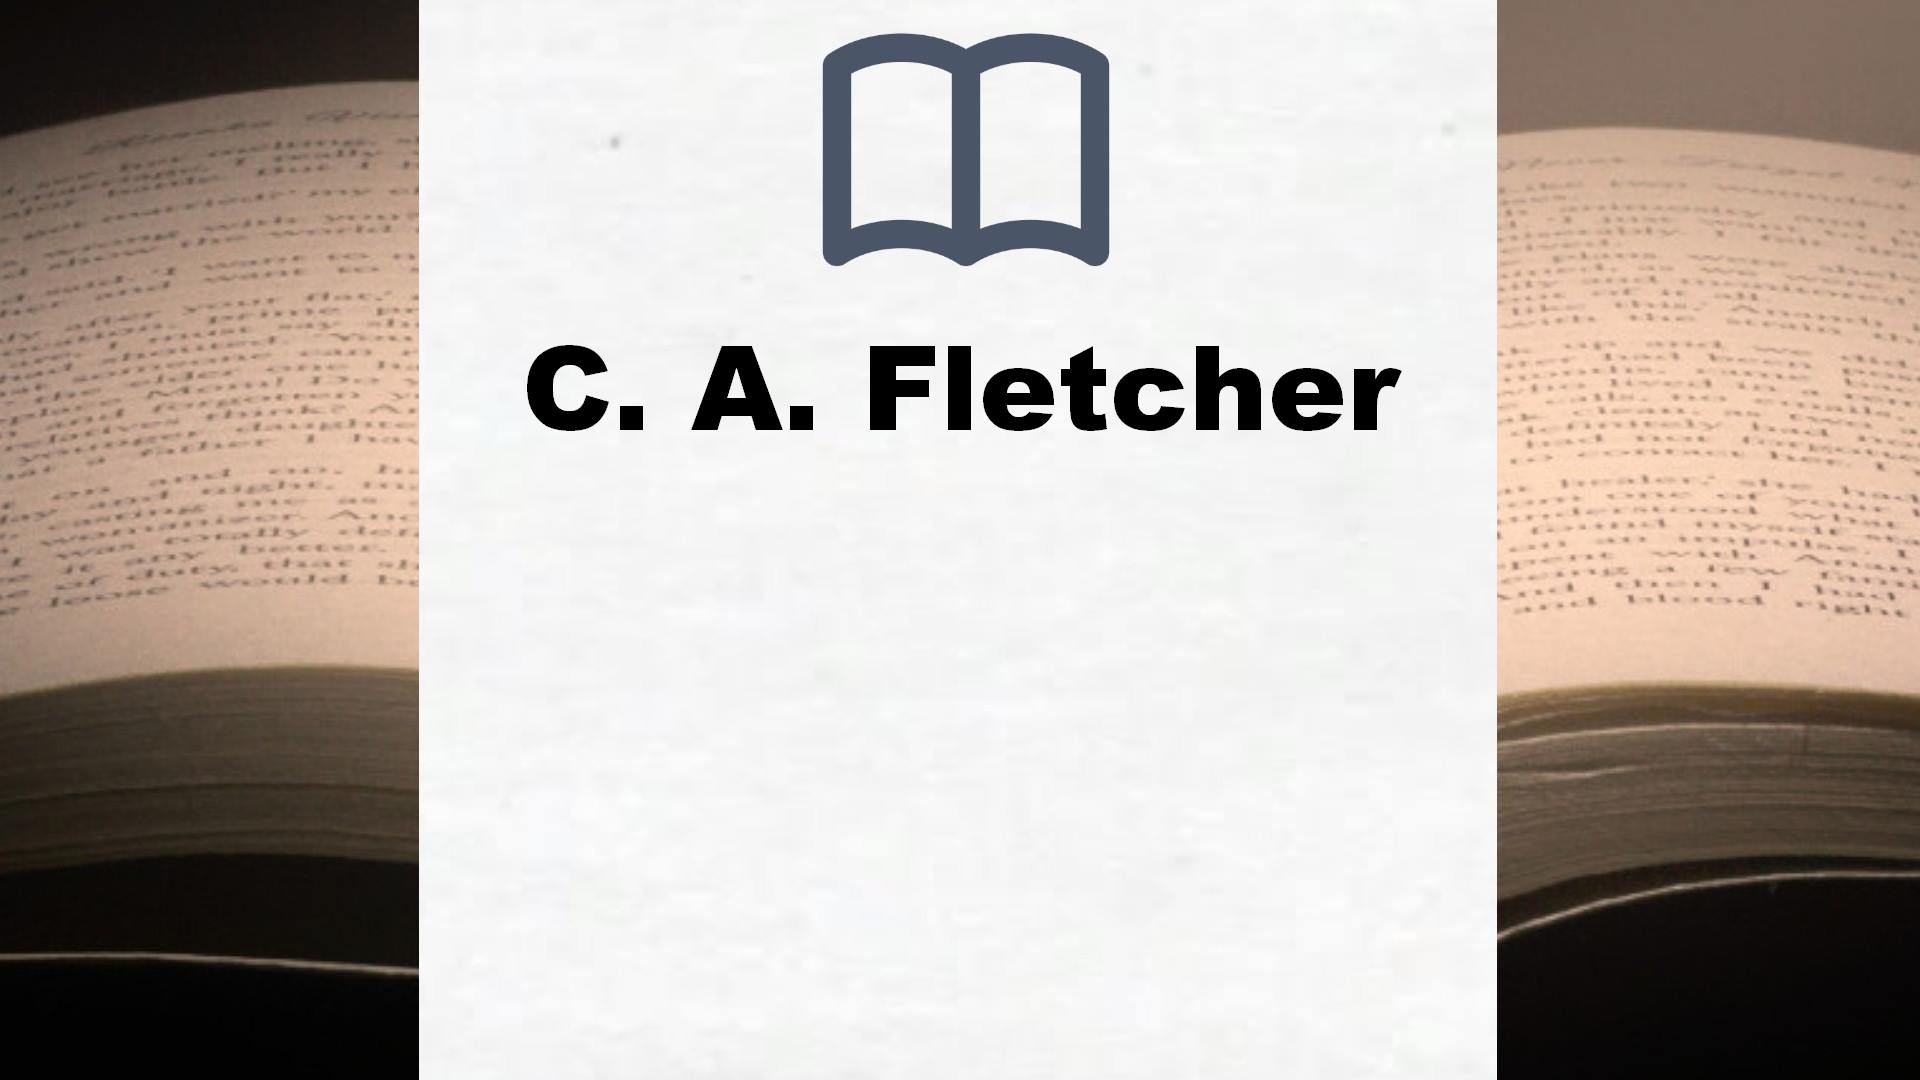 Libros C. A. Fletcher